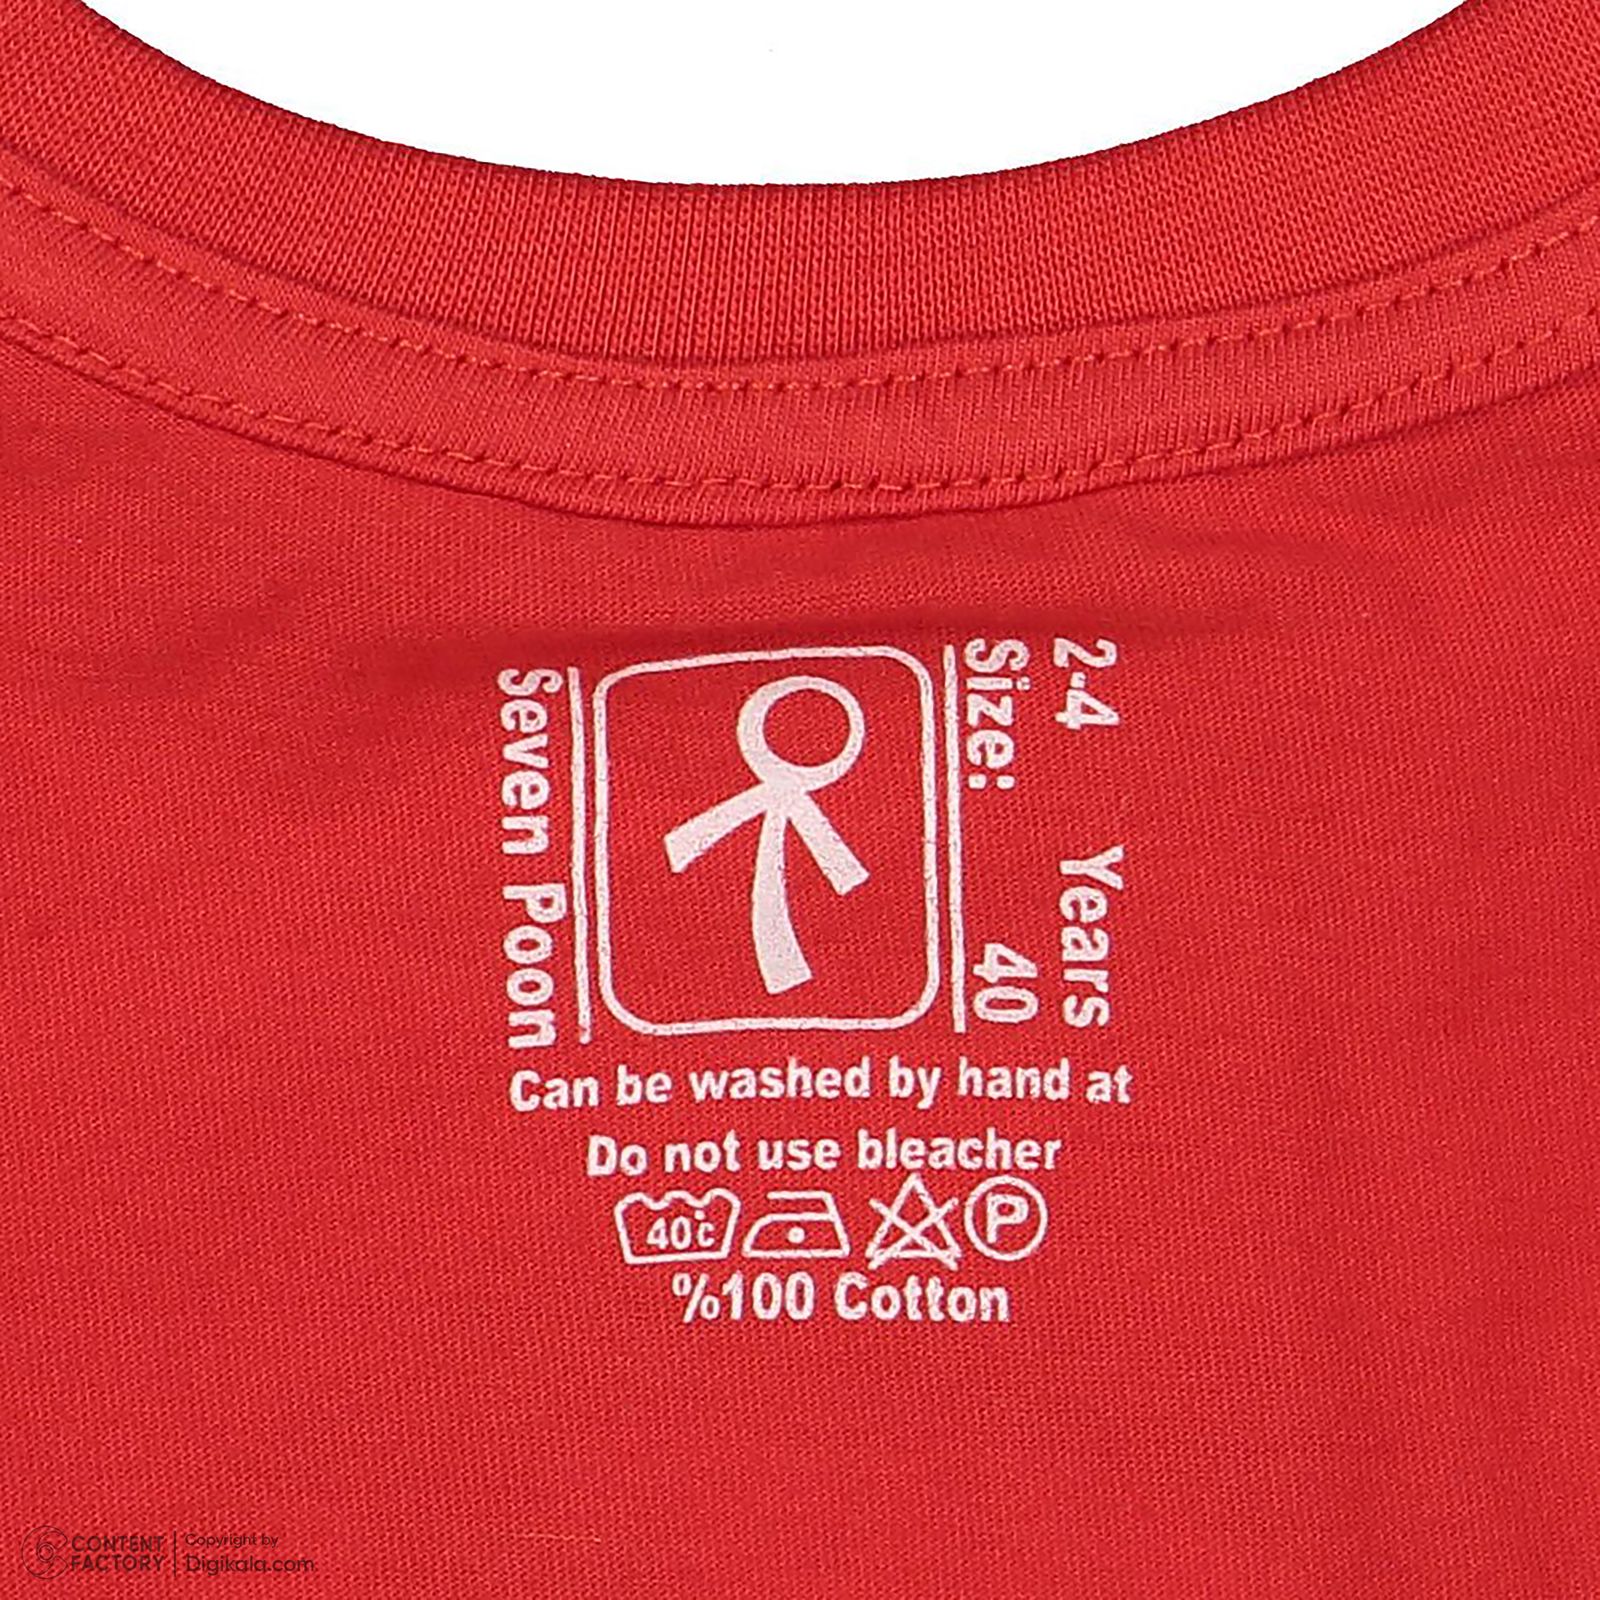 ست تی شرت و شلوارک پسرانه سون پون مدل 13911083 رنگ قرمز -  - 8